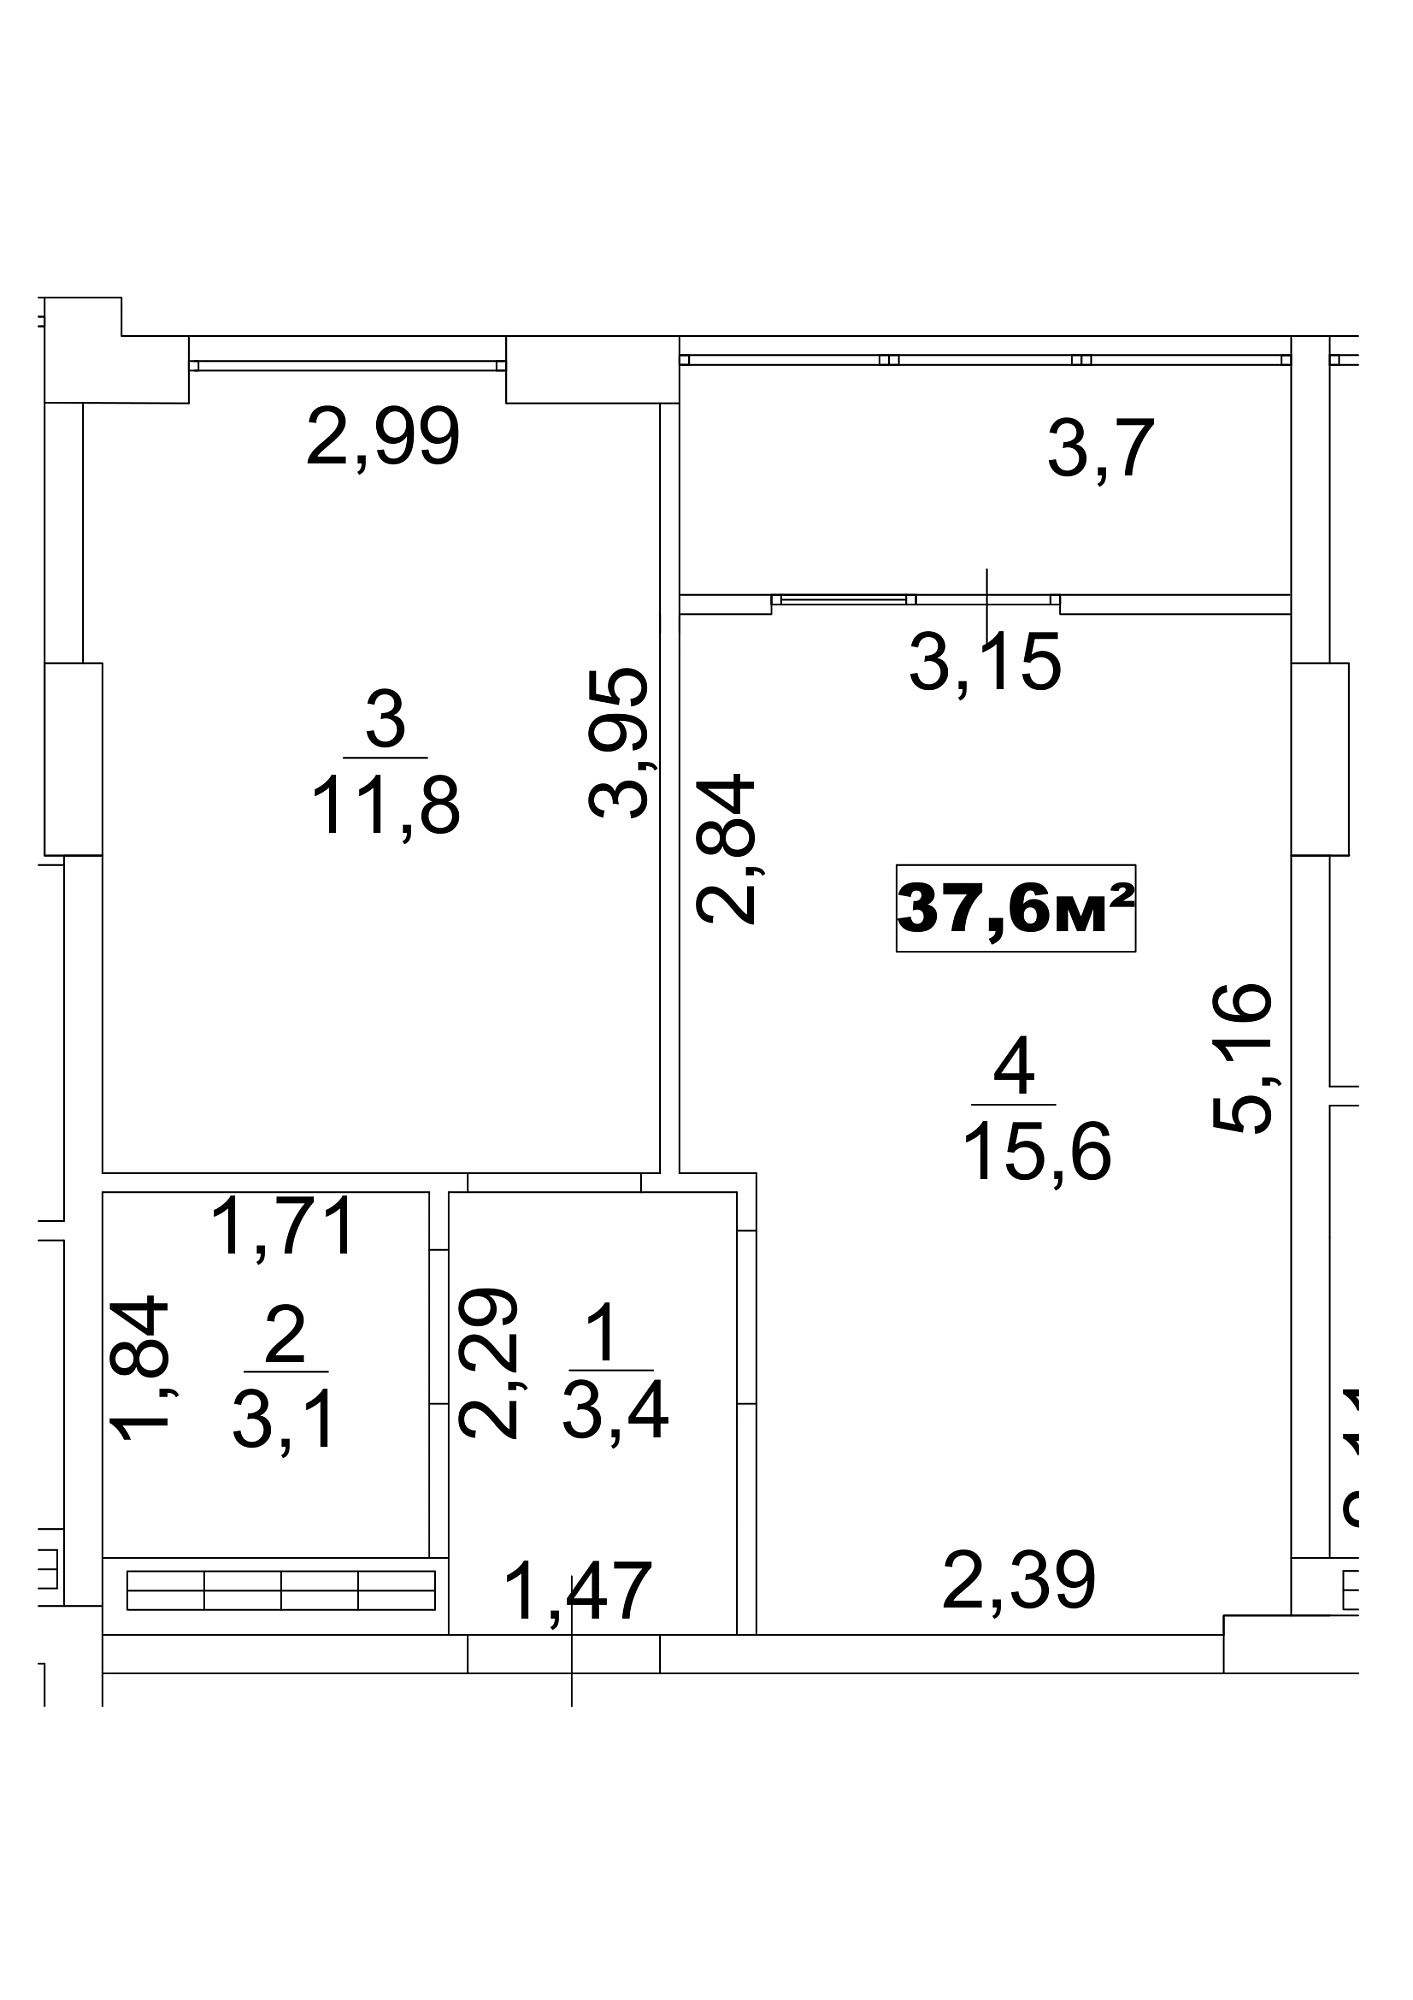 Планировка 1-к квартира площей 37.6м2, AB-13-05/00039.